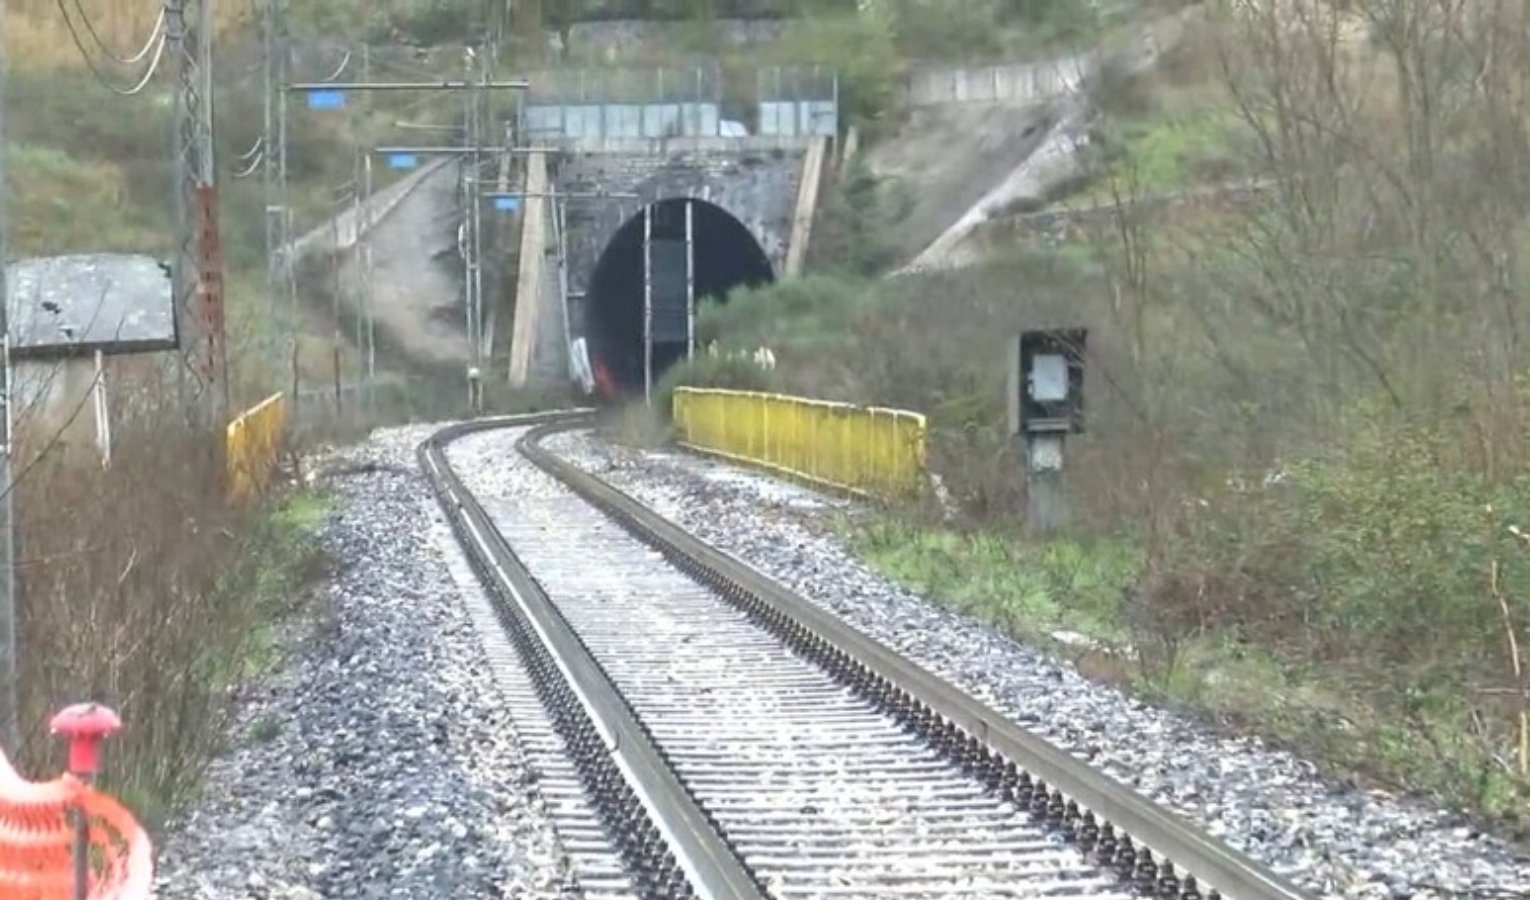 Frana lungo la ferrovia in Piemonte, disagi sulla linea Torino-Genova